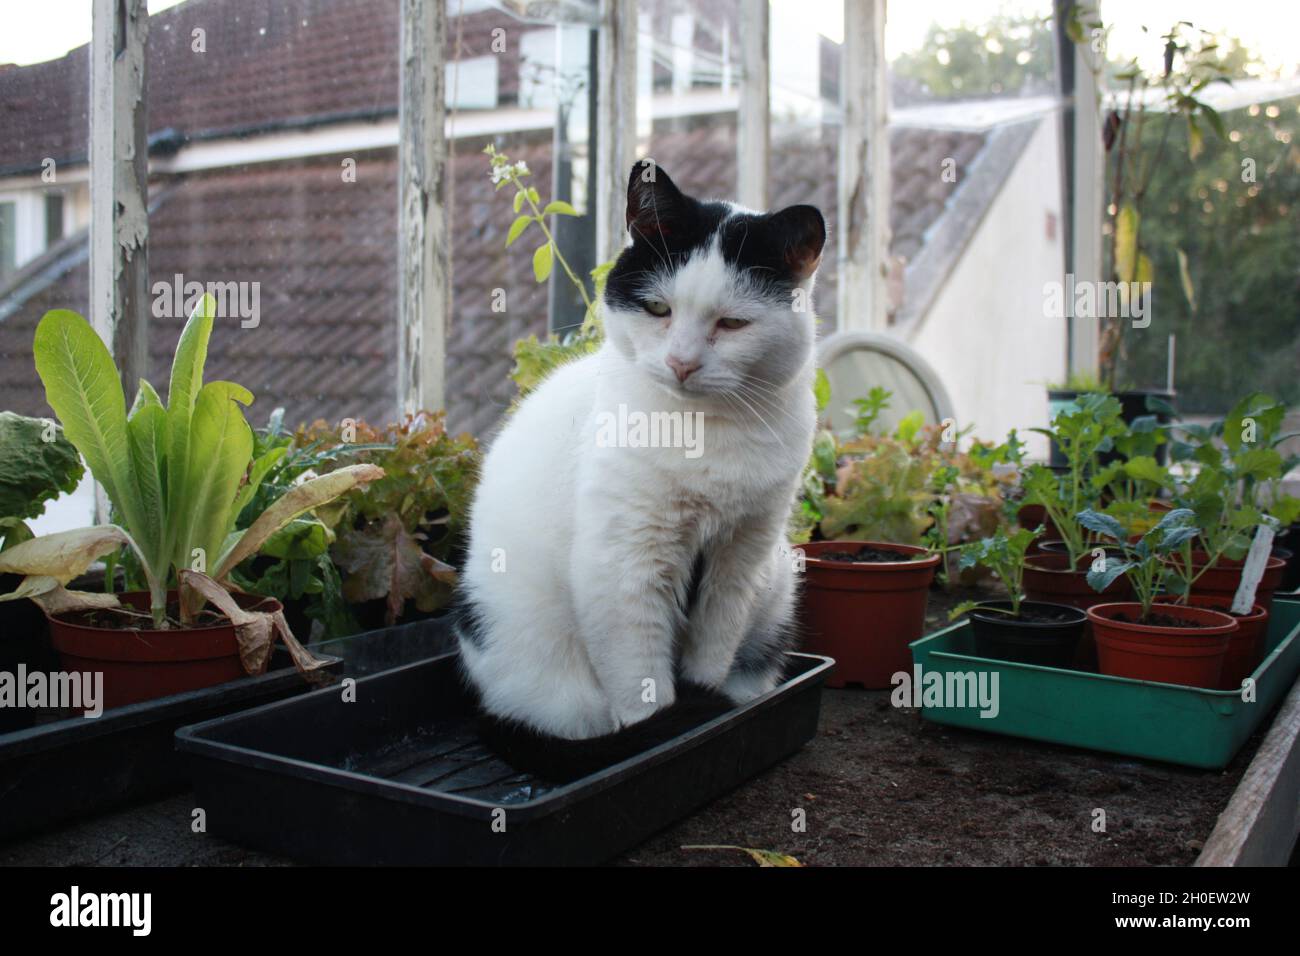 Un gato blanco y negro se sienta en un invernadero personal entre macetas de plantas. Foto de stock